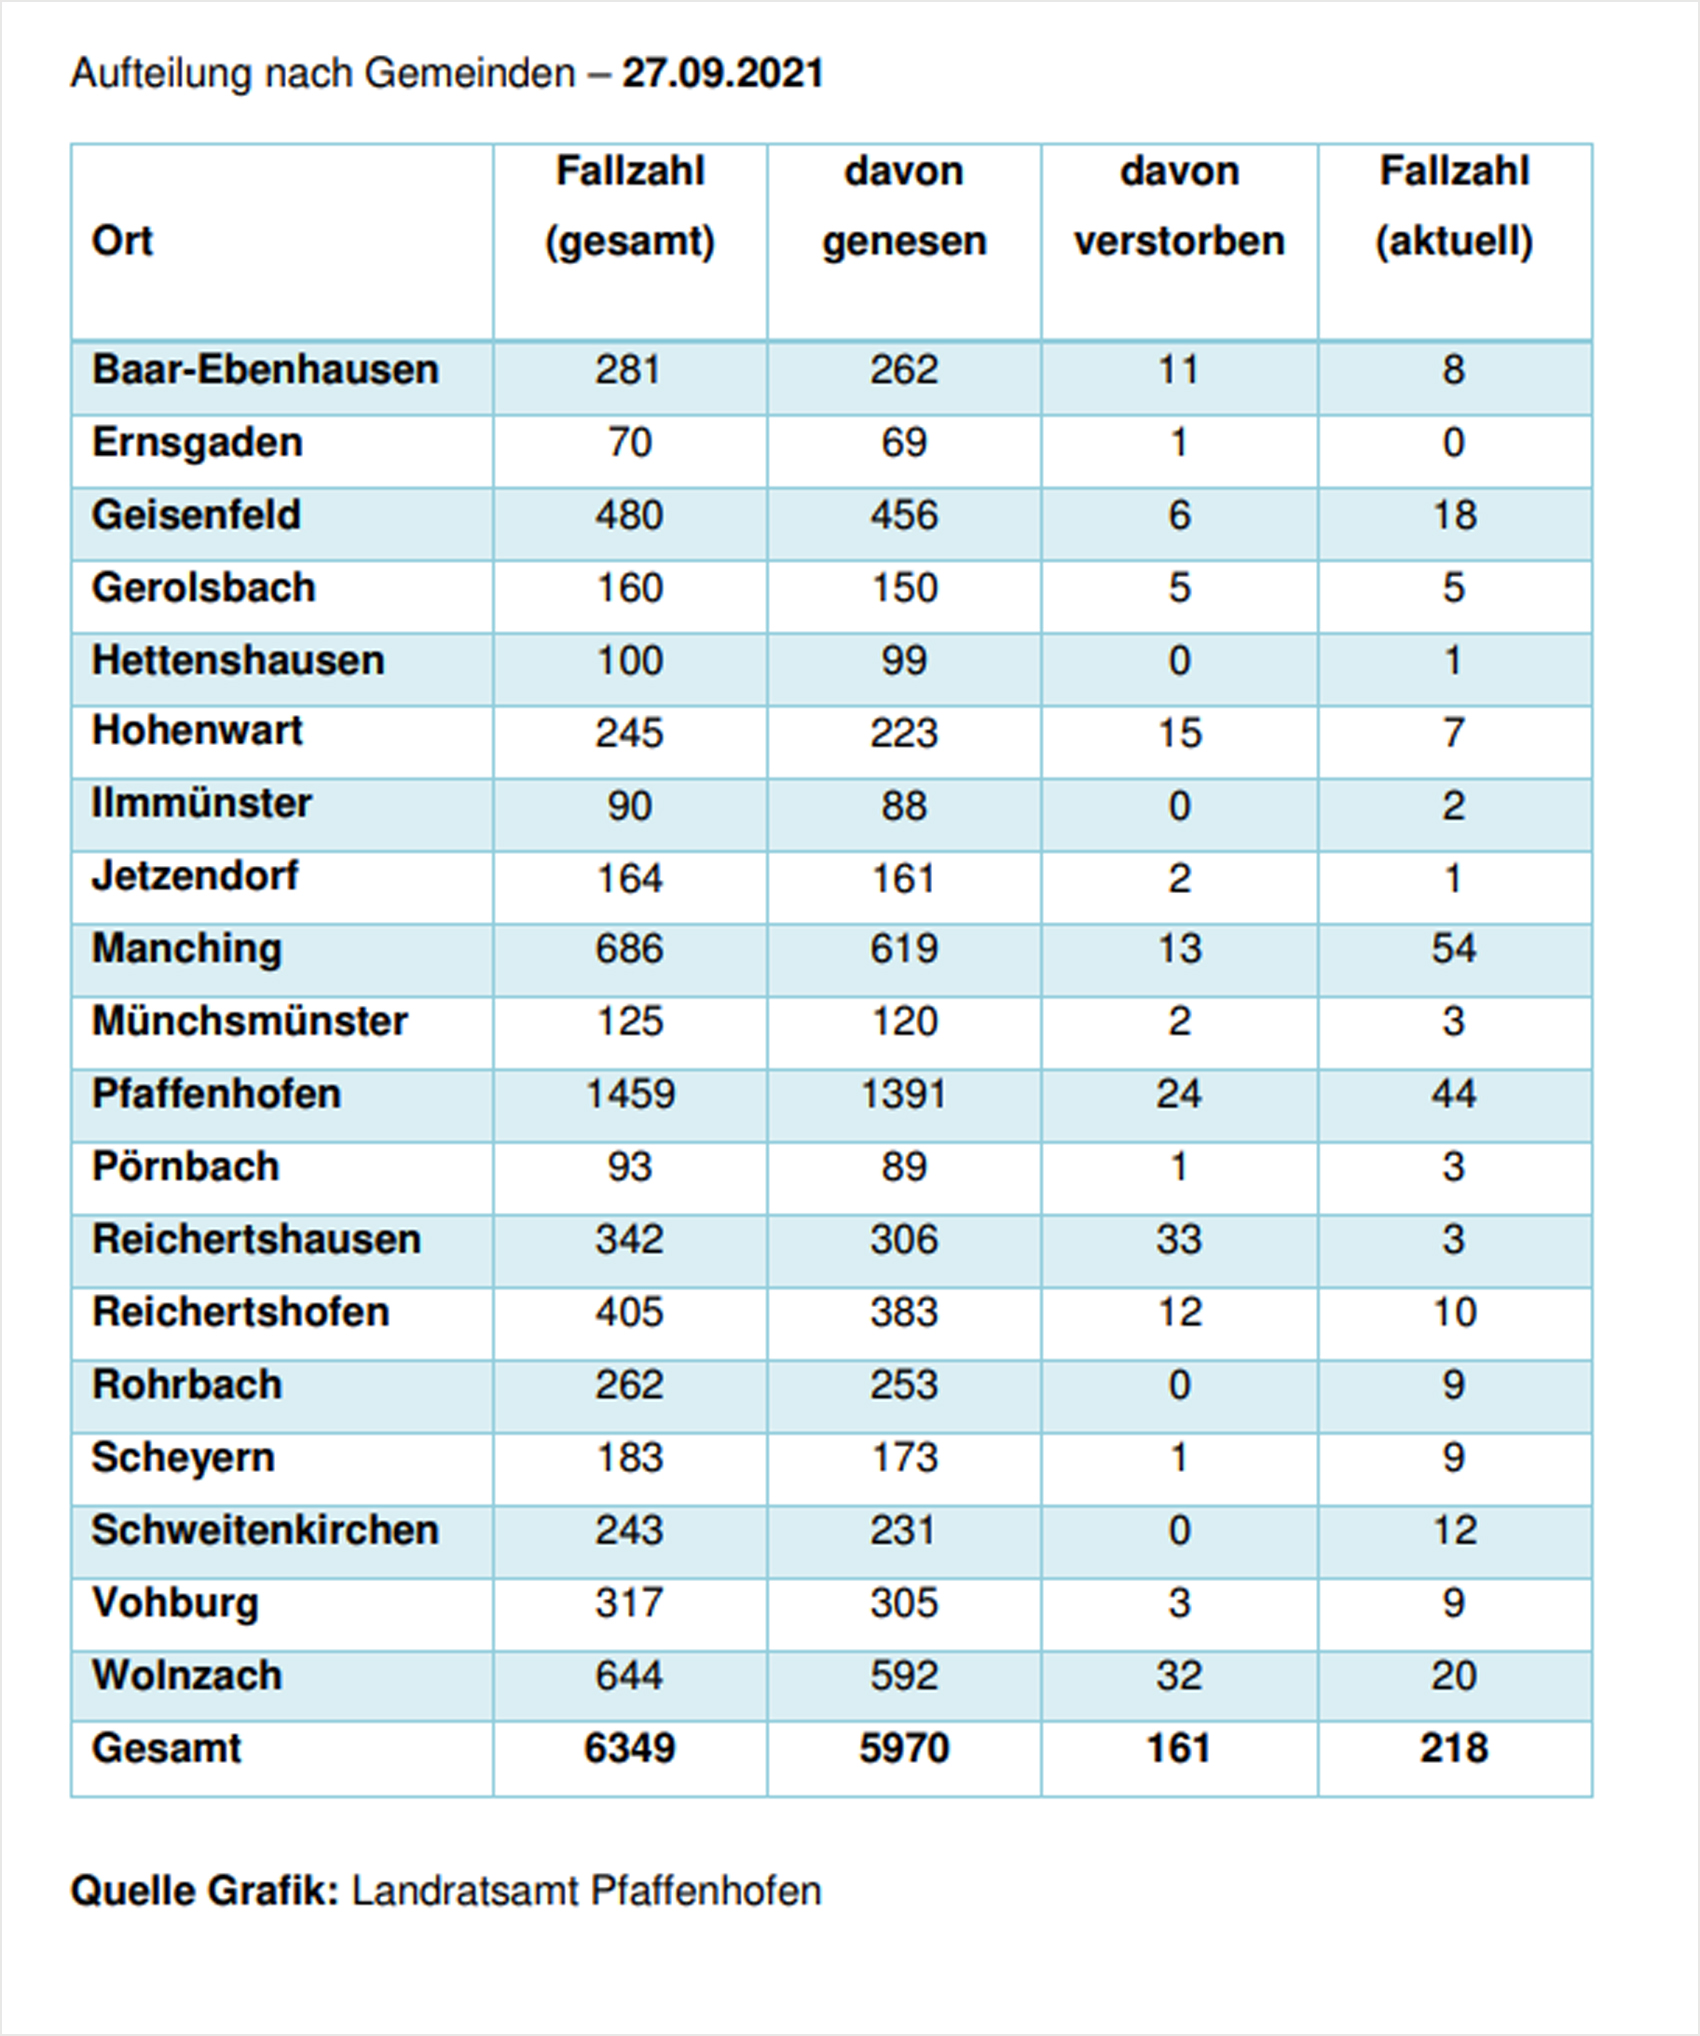 Verteilung der Fallzahlen auf die Landkreisgemeinden - 27.09.2021